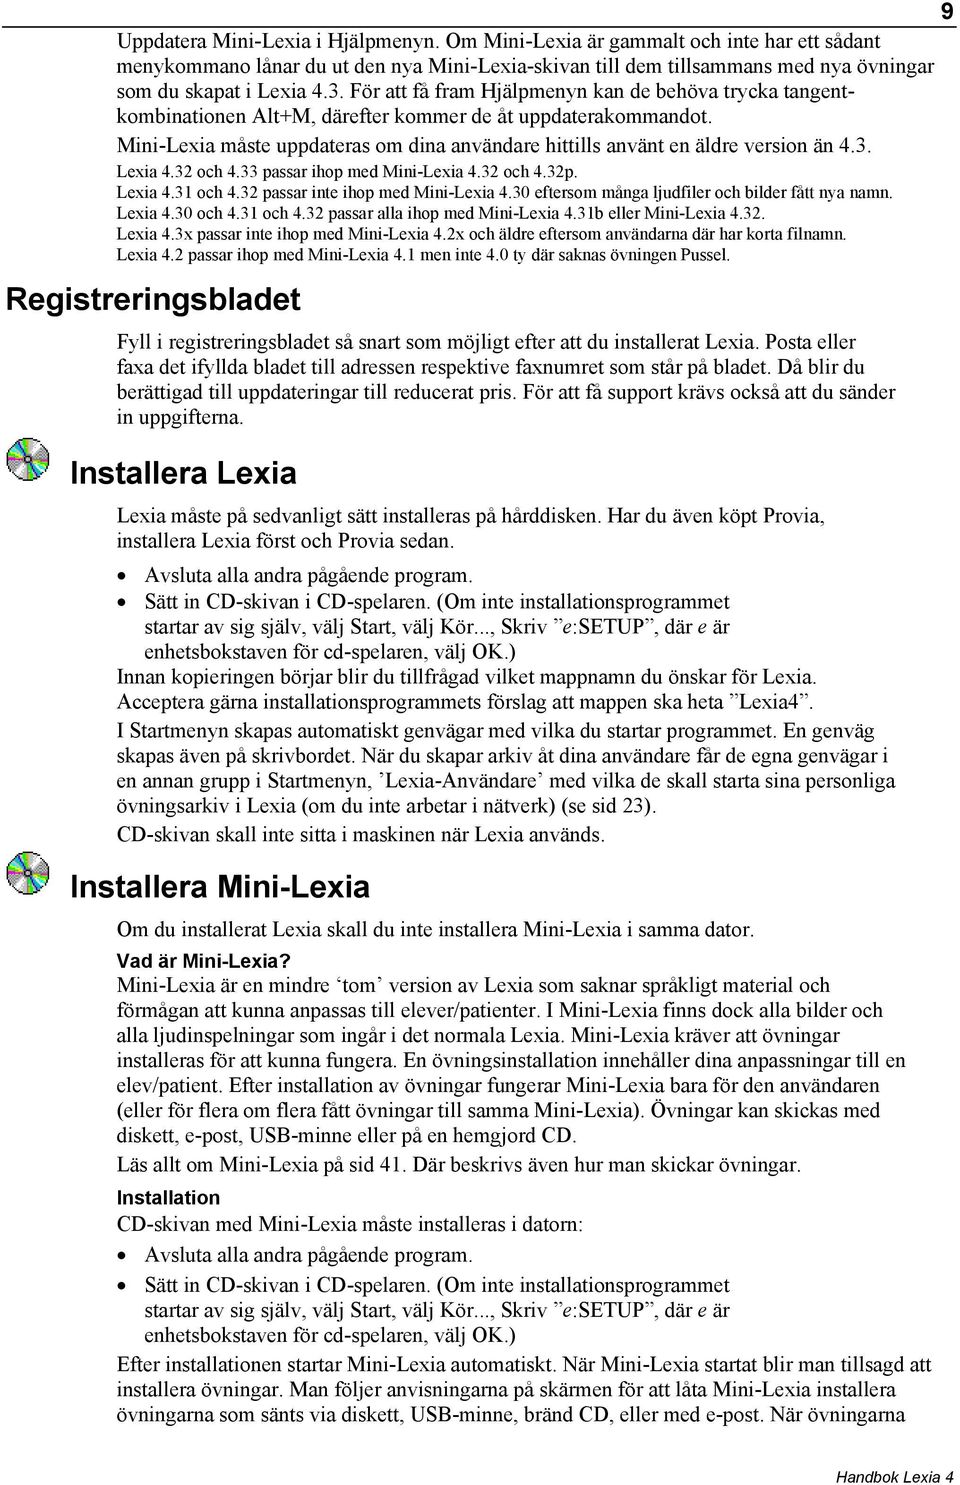 Mini-Lexia måste uppdateras om dina användare hittills använt en äldre version än 4.3. Lexia 4.32 och 4.33 passar ihop med Mini-Lexia 4.32 och 4.32p. Lexia 4.31 och 4.